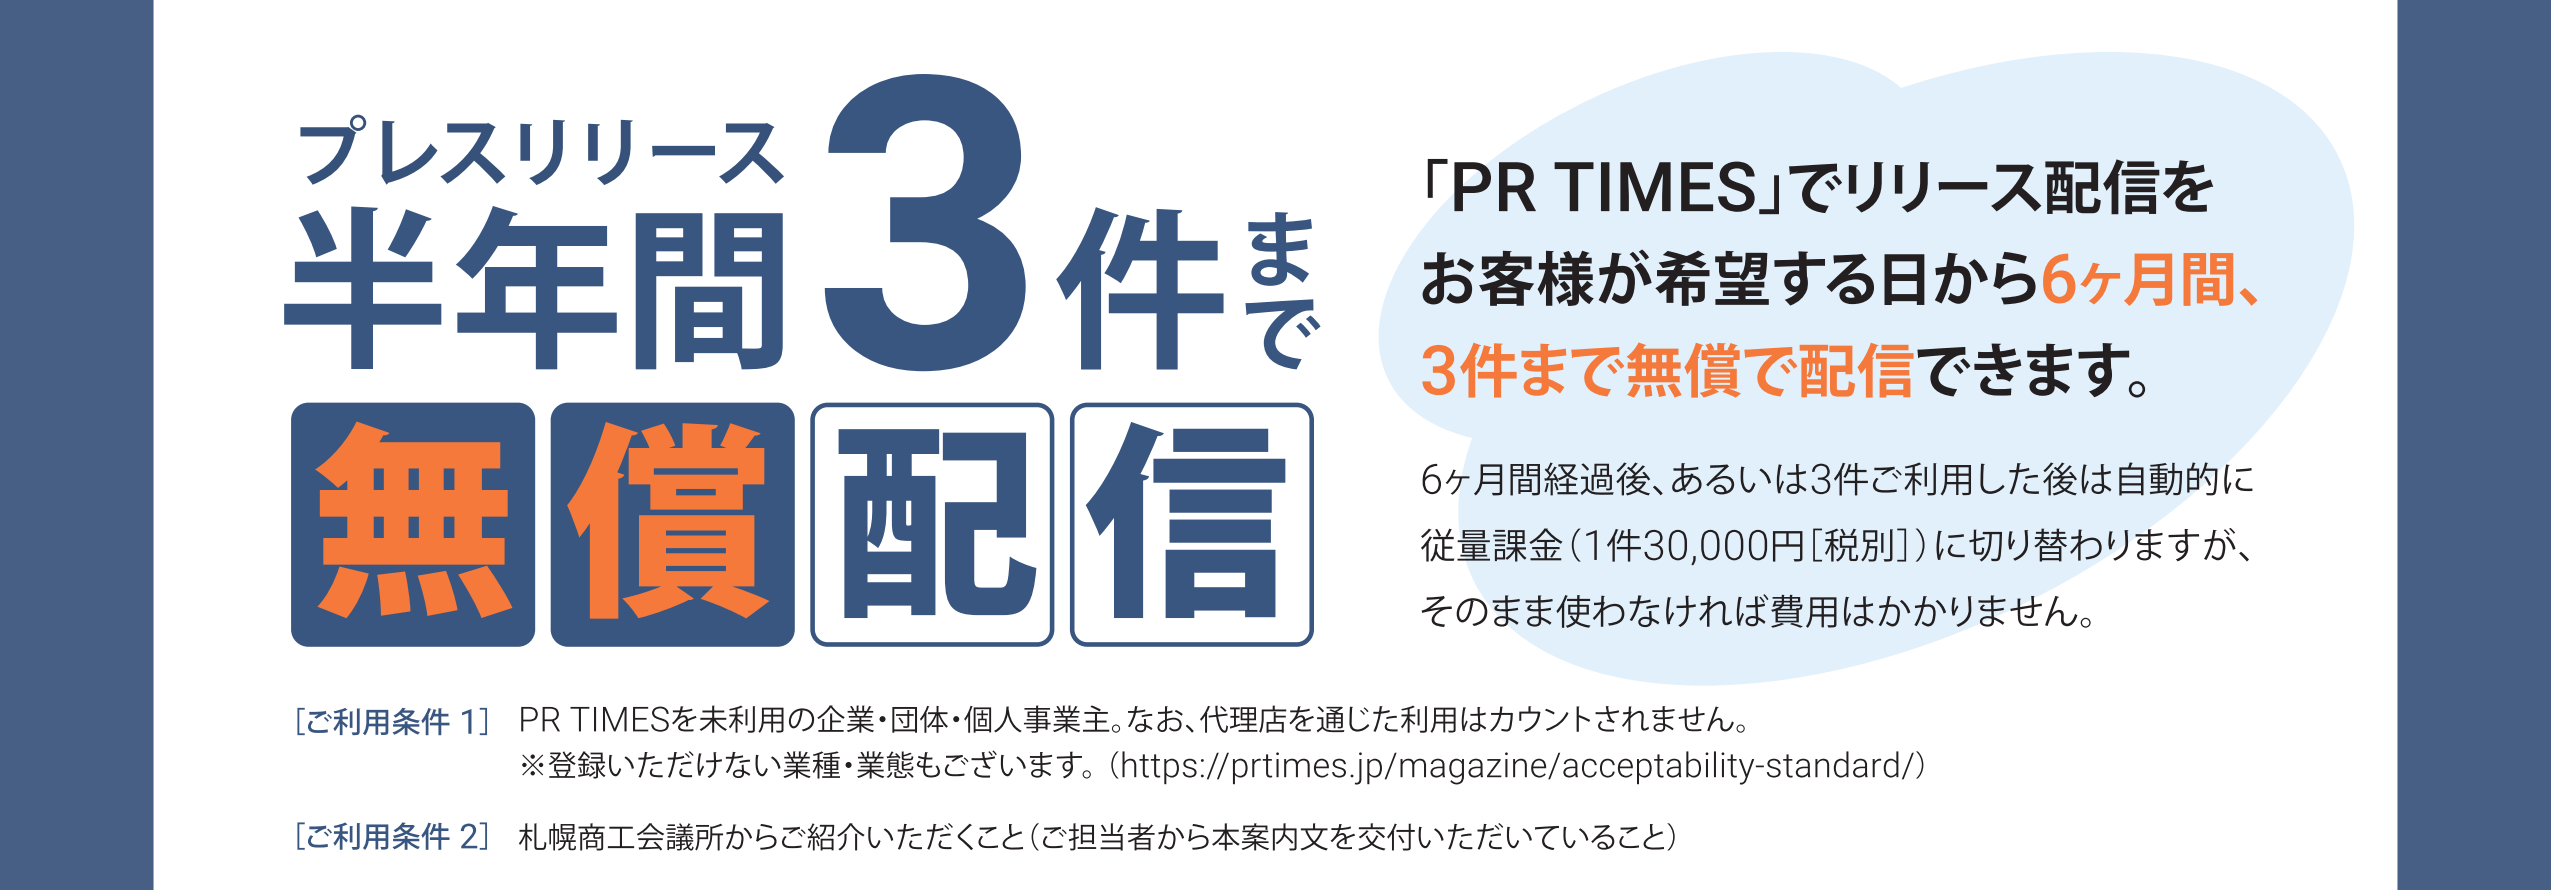 札幌商工会議所×PR TIMES提携プログラムご案内_022.png